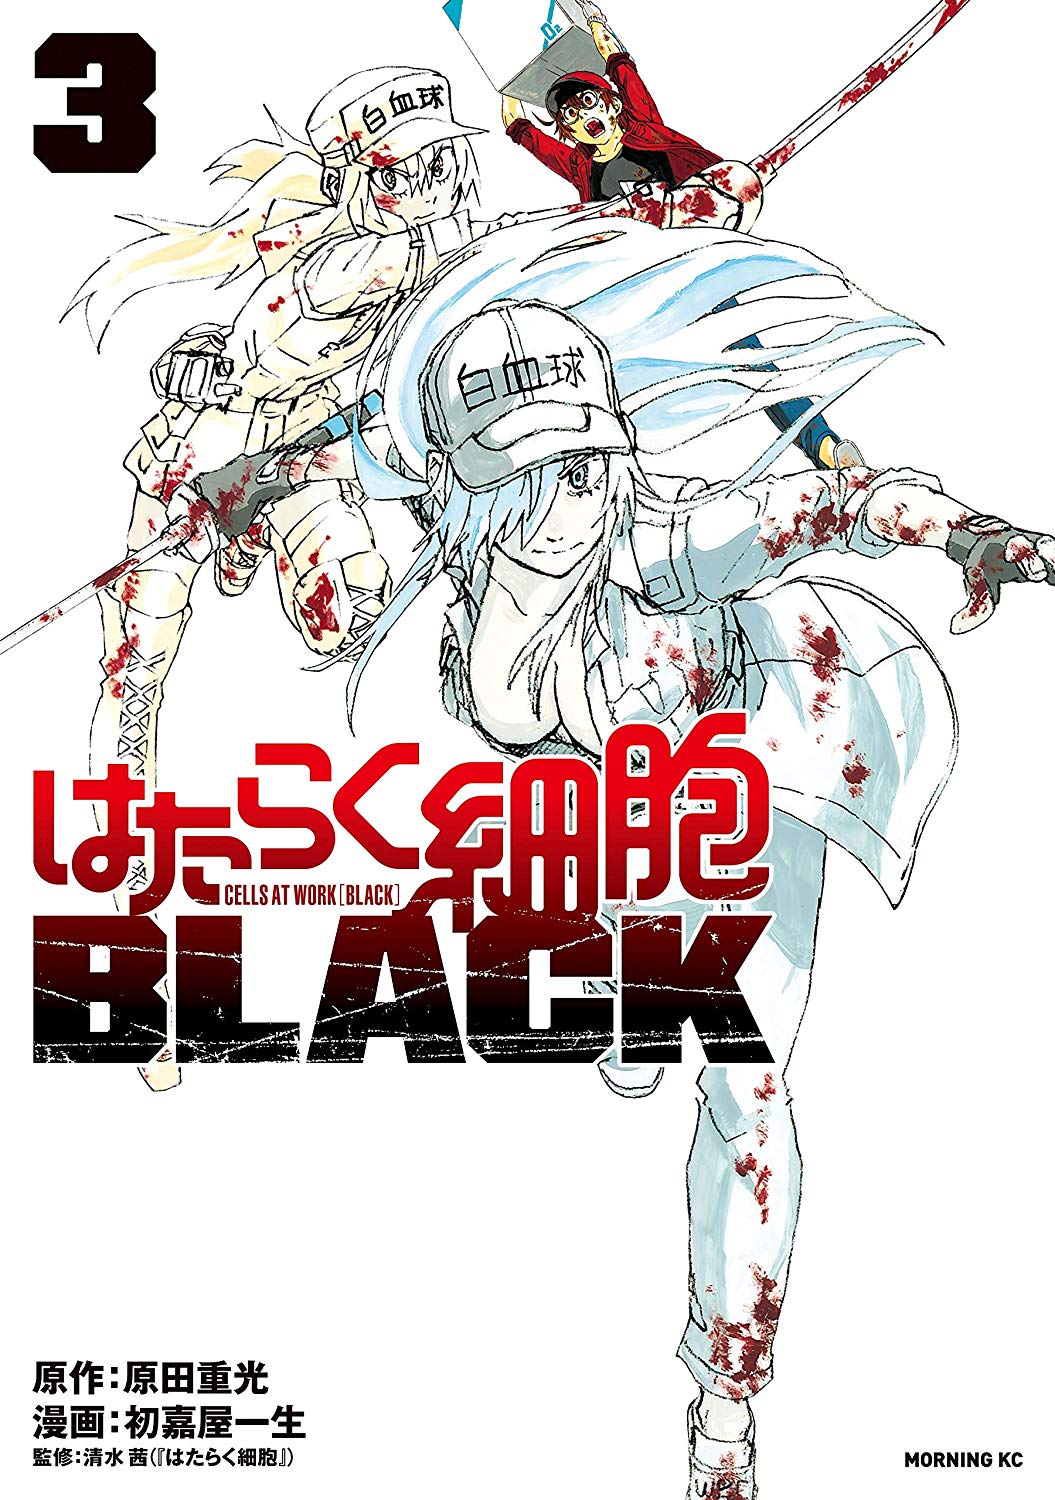 ▷ Hataraku Saibou Black Manga is about to end 〜 Anime Sweet 💕